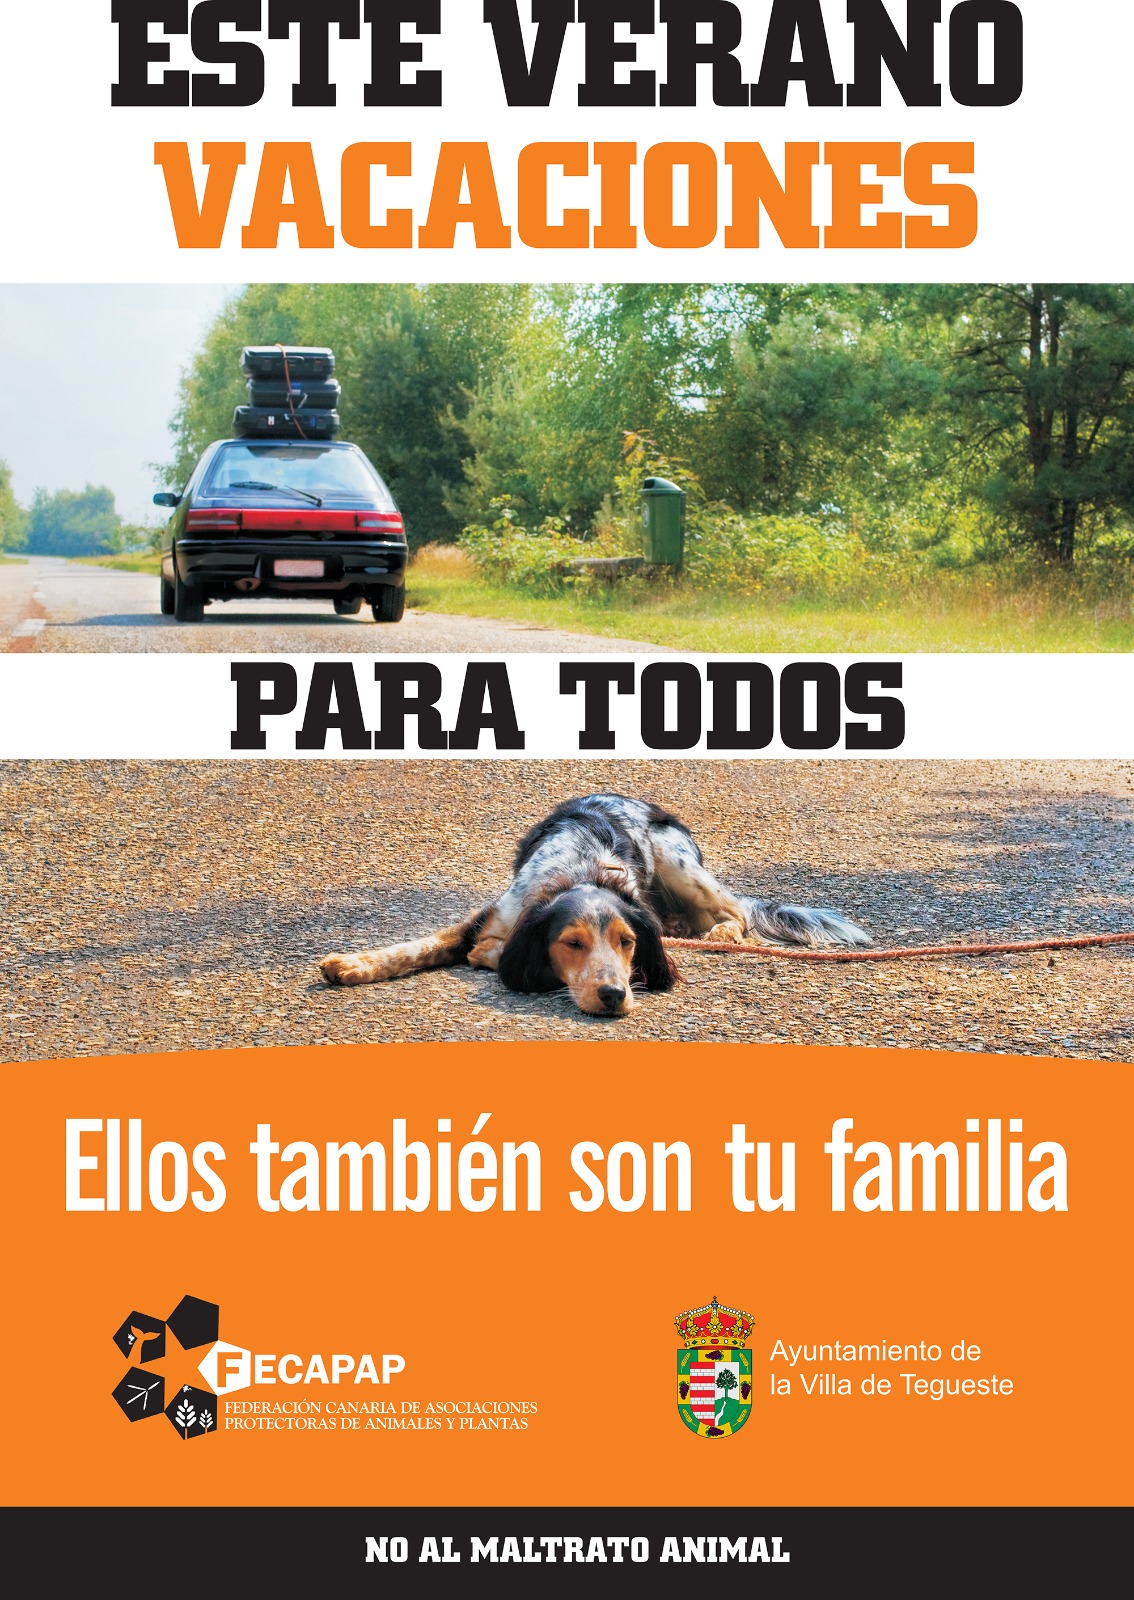 El Ayuntamiento de Tegueste lanza una campaña contra el abandono animal